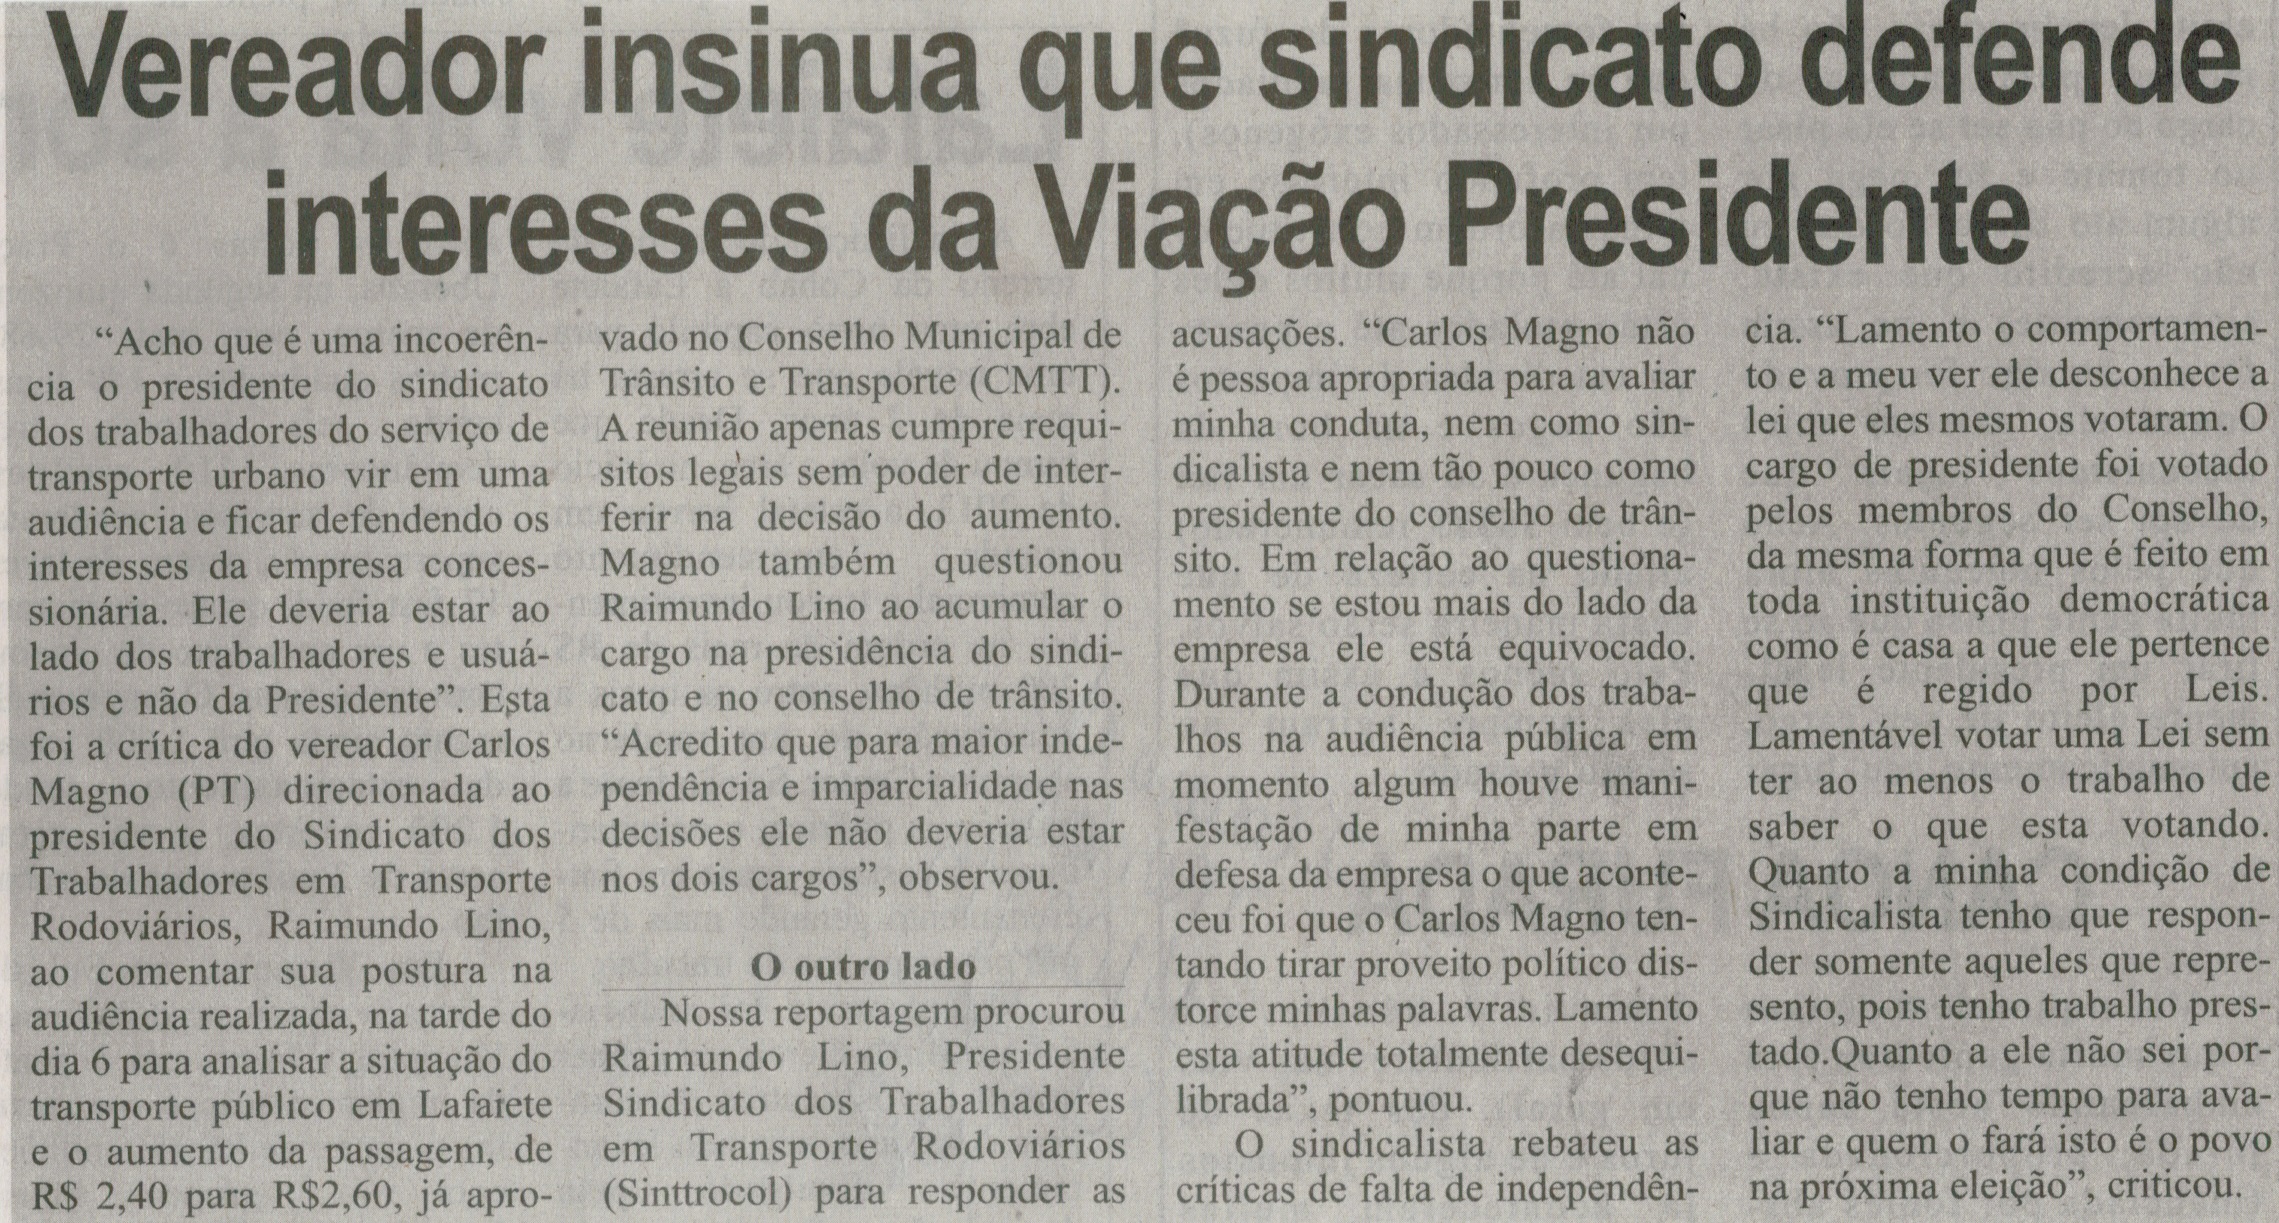 Vereador insinua que sindicato defende interesses da Viação Presidente. Correio de Minas, Conselheiro Lafaiete, 14 fev. 2015, p. 3.